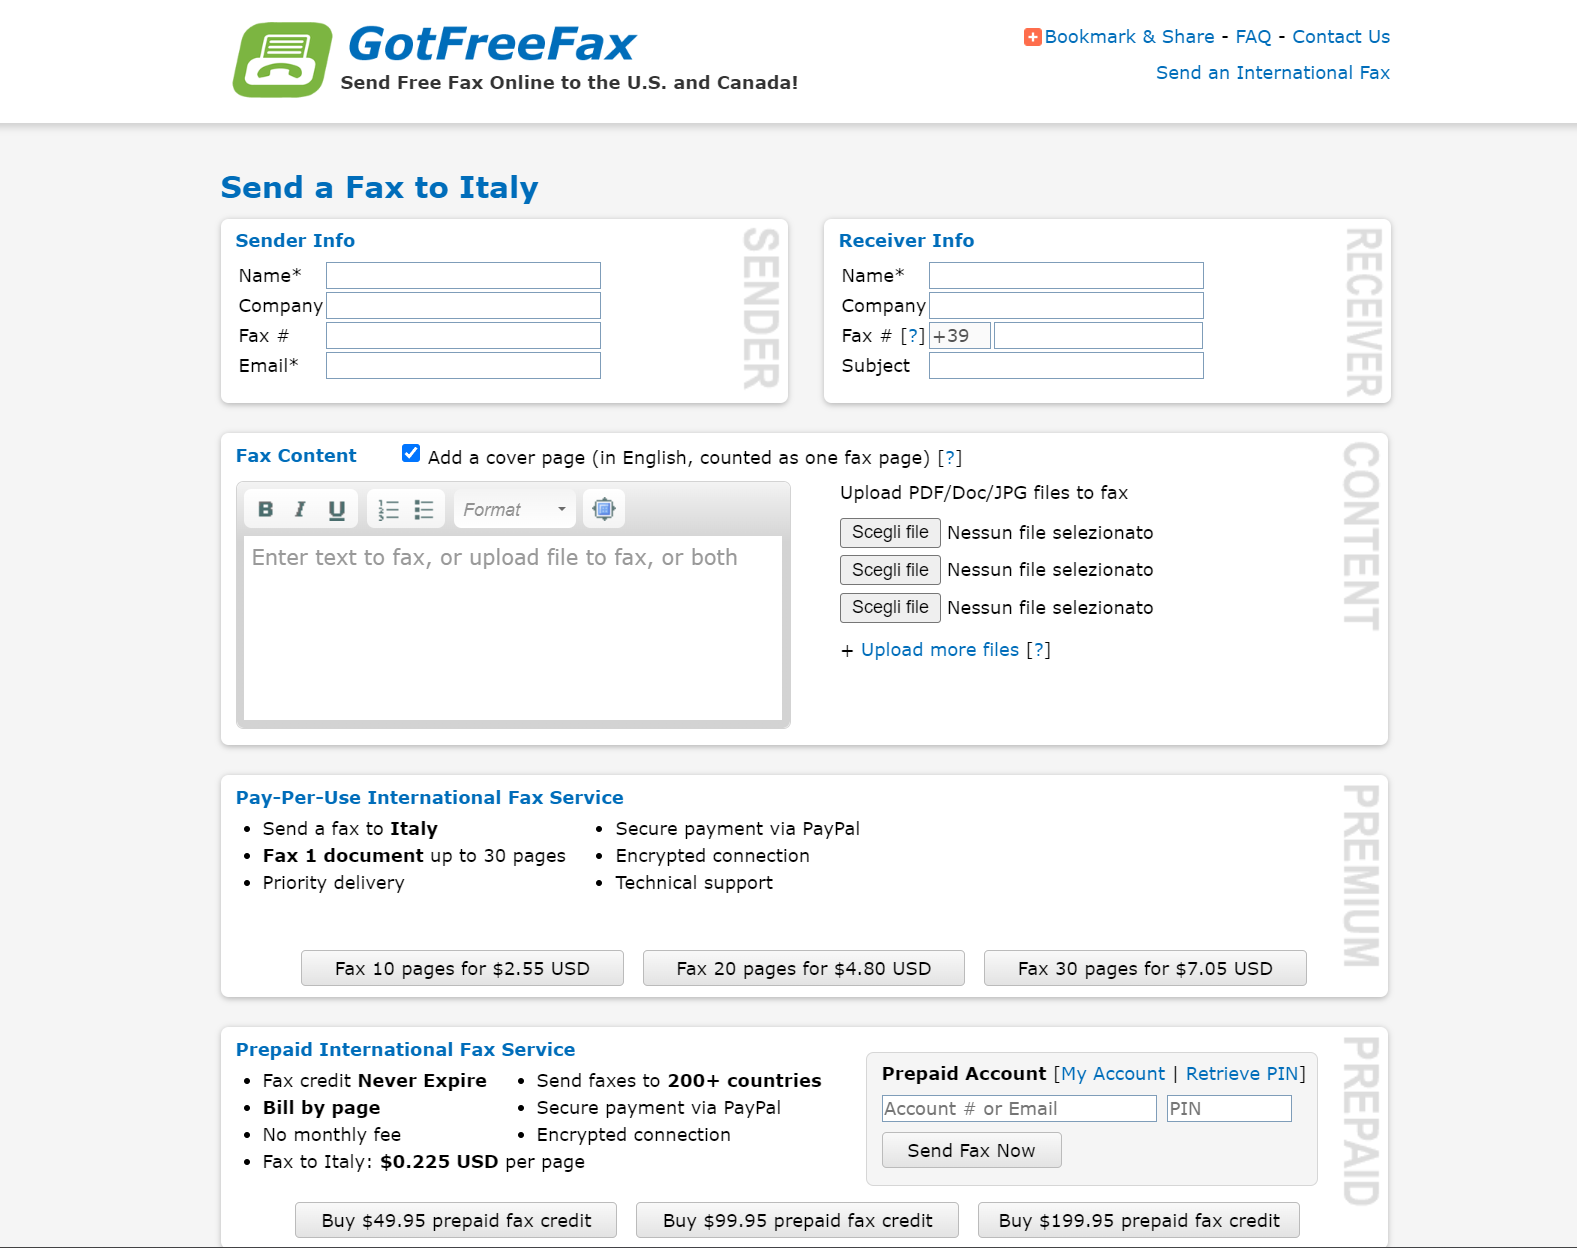 Got-free-fax-schermata-homepage